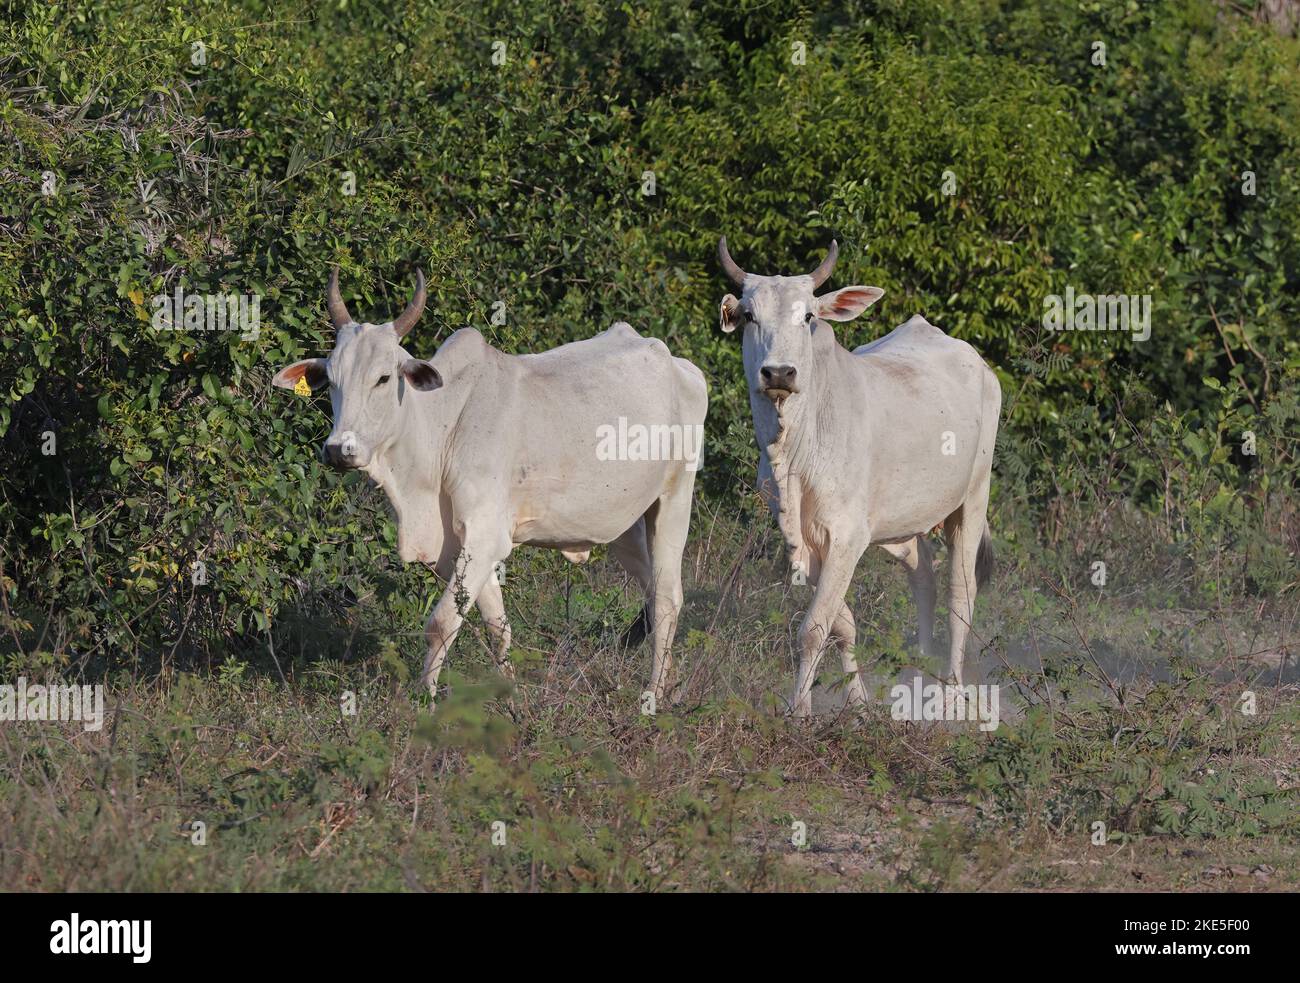 Les jeunes bovins de Brahman se férant sur le marais sec Pantanal, Brésil. Juillet Banque D'Images